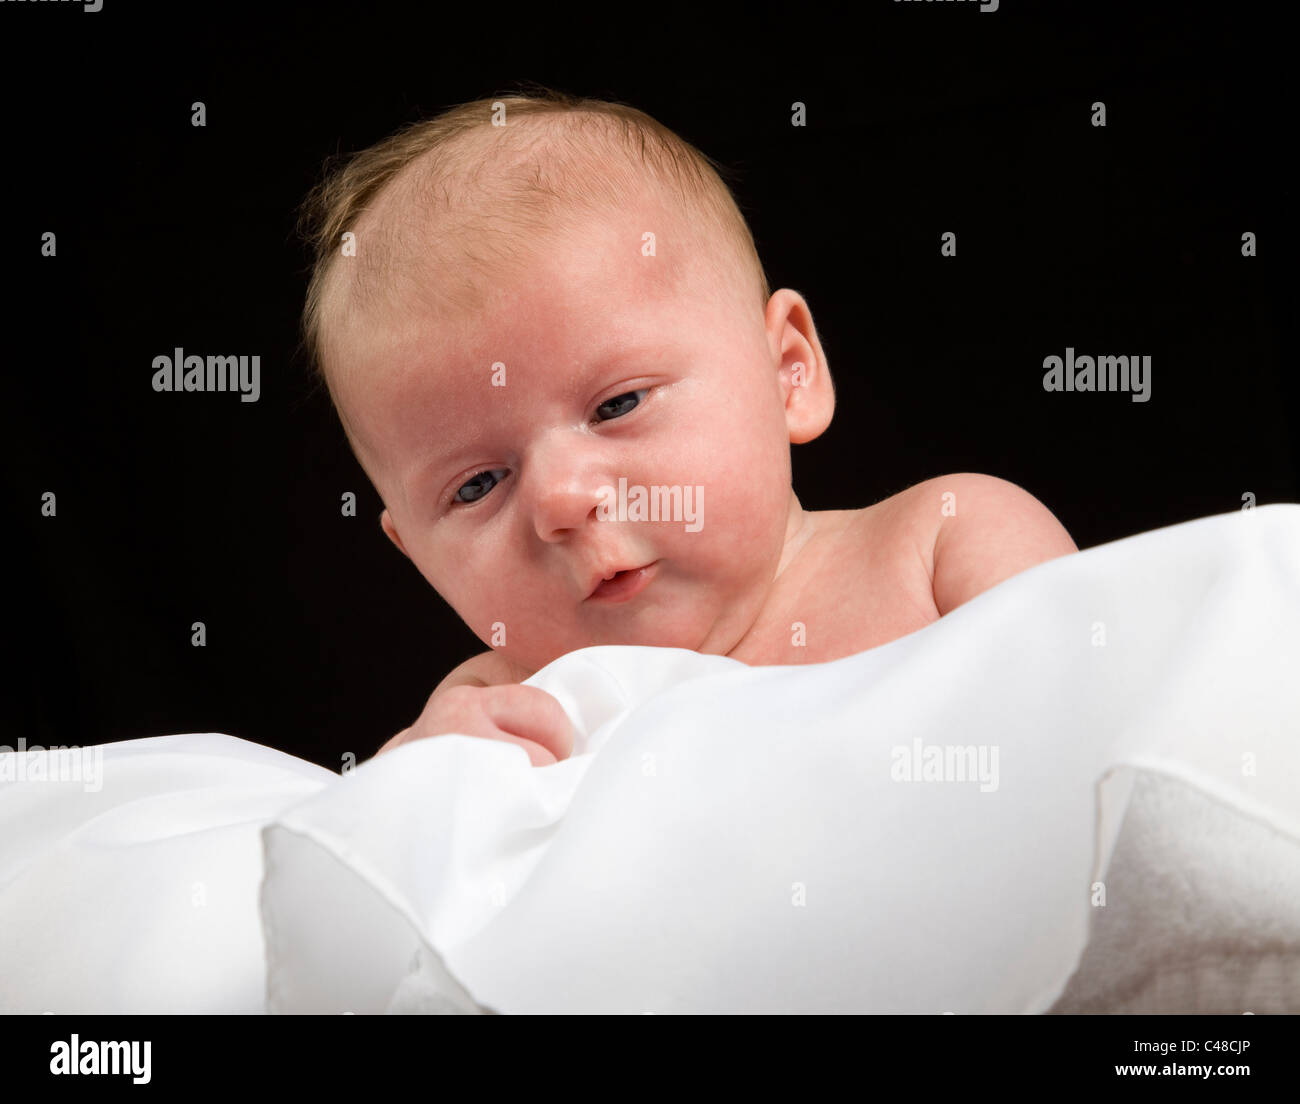 Kleinkind, Baby, Mädchen, 5 Wochen alt, Stock Photo